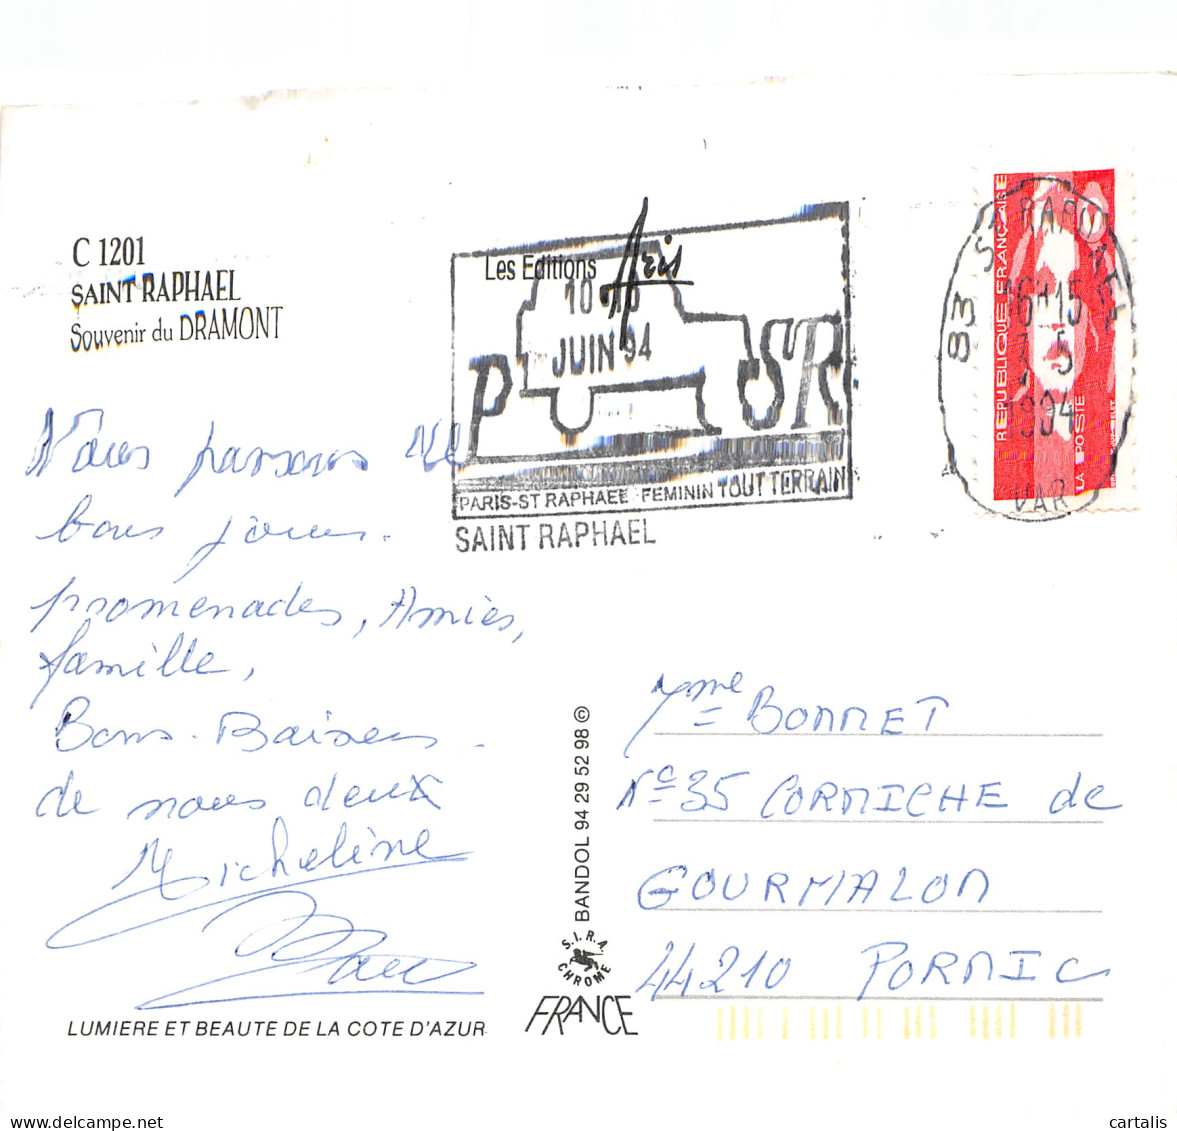 83-BOULOURIS LE DRAMONT-N°C4095-D/0165 - Boulouris